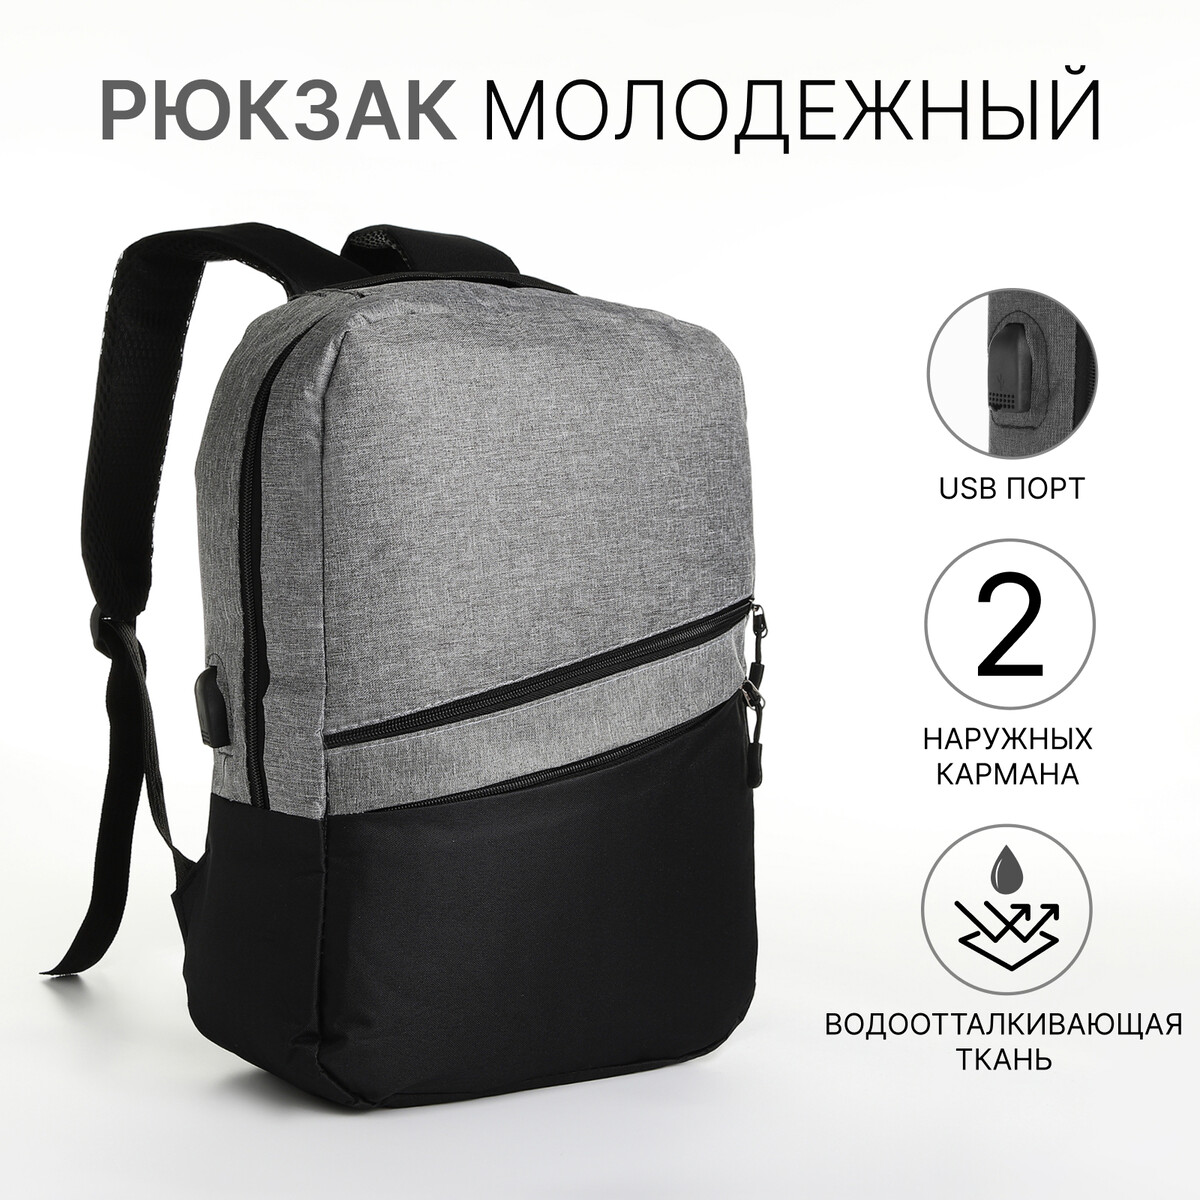 Рюкзак городской с usb из текстиля на молнии, 2 кармана, цвет черный/серый